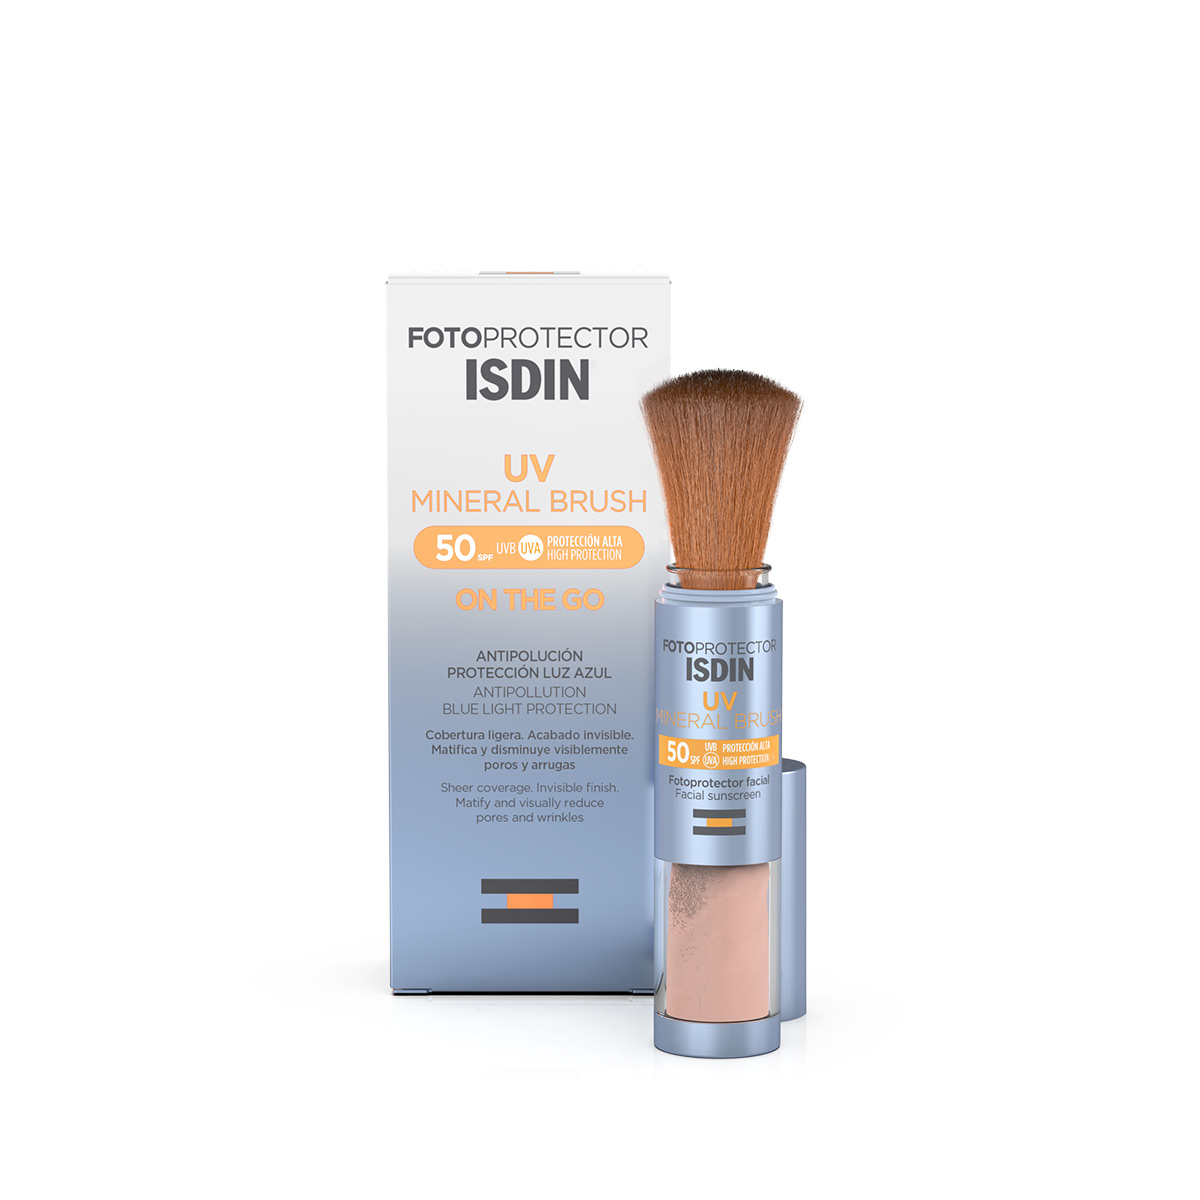 ISDIN - 👉 ISDIN presenta los nuevos labiales protectores: 1⃣ Con  protección frente a la radiación UVB y UVA. 2⃣ Con textura transparente que  no deja residuo blanco. 3⃣ Nuevo packaging con